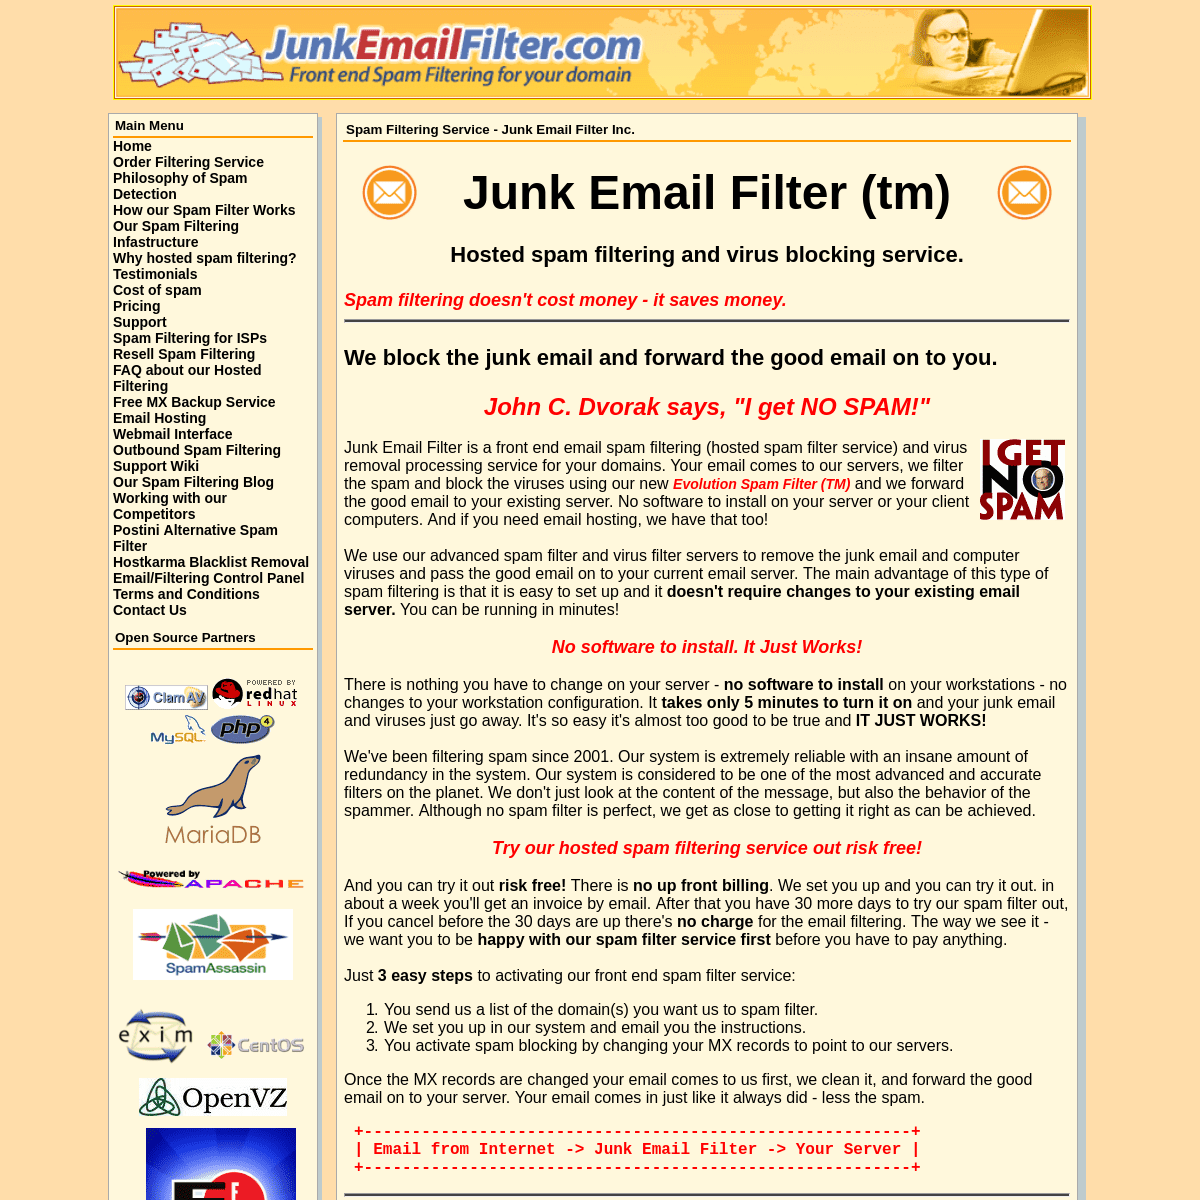 A complete backup of junkemailfilter.com